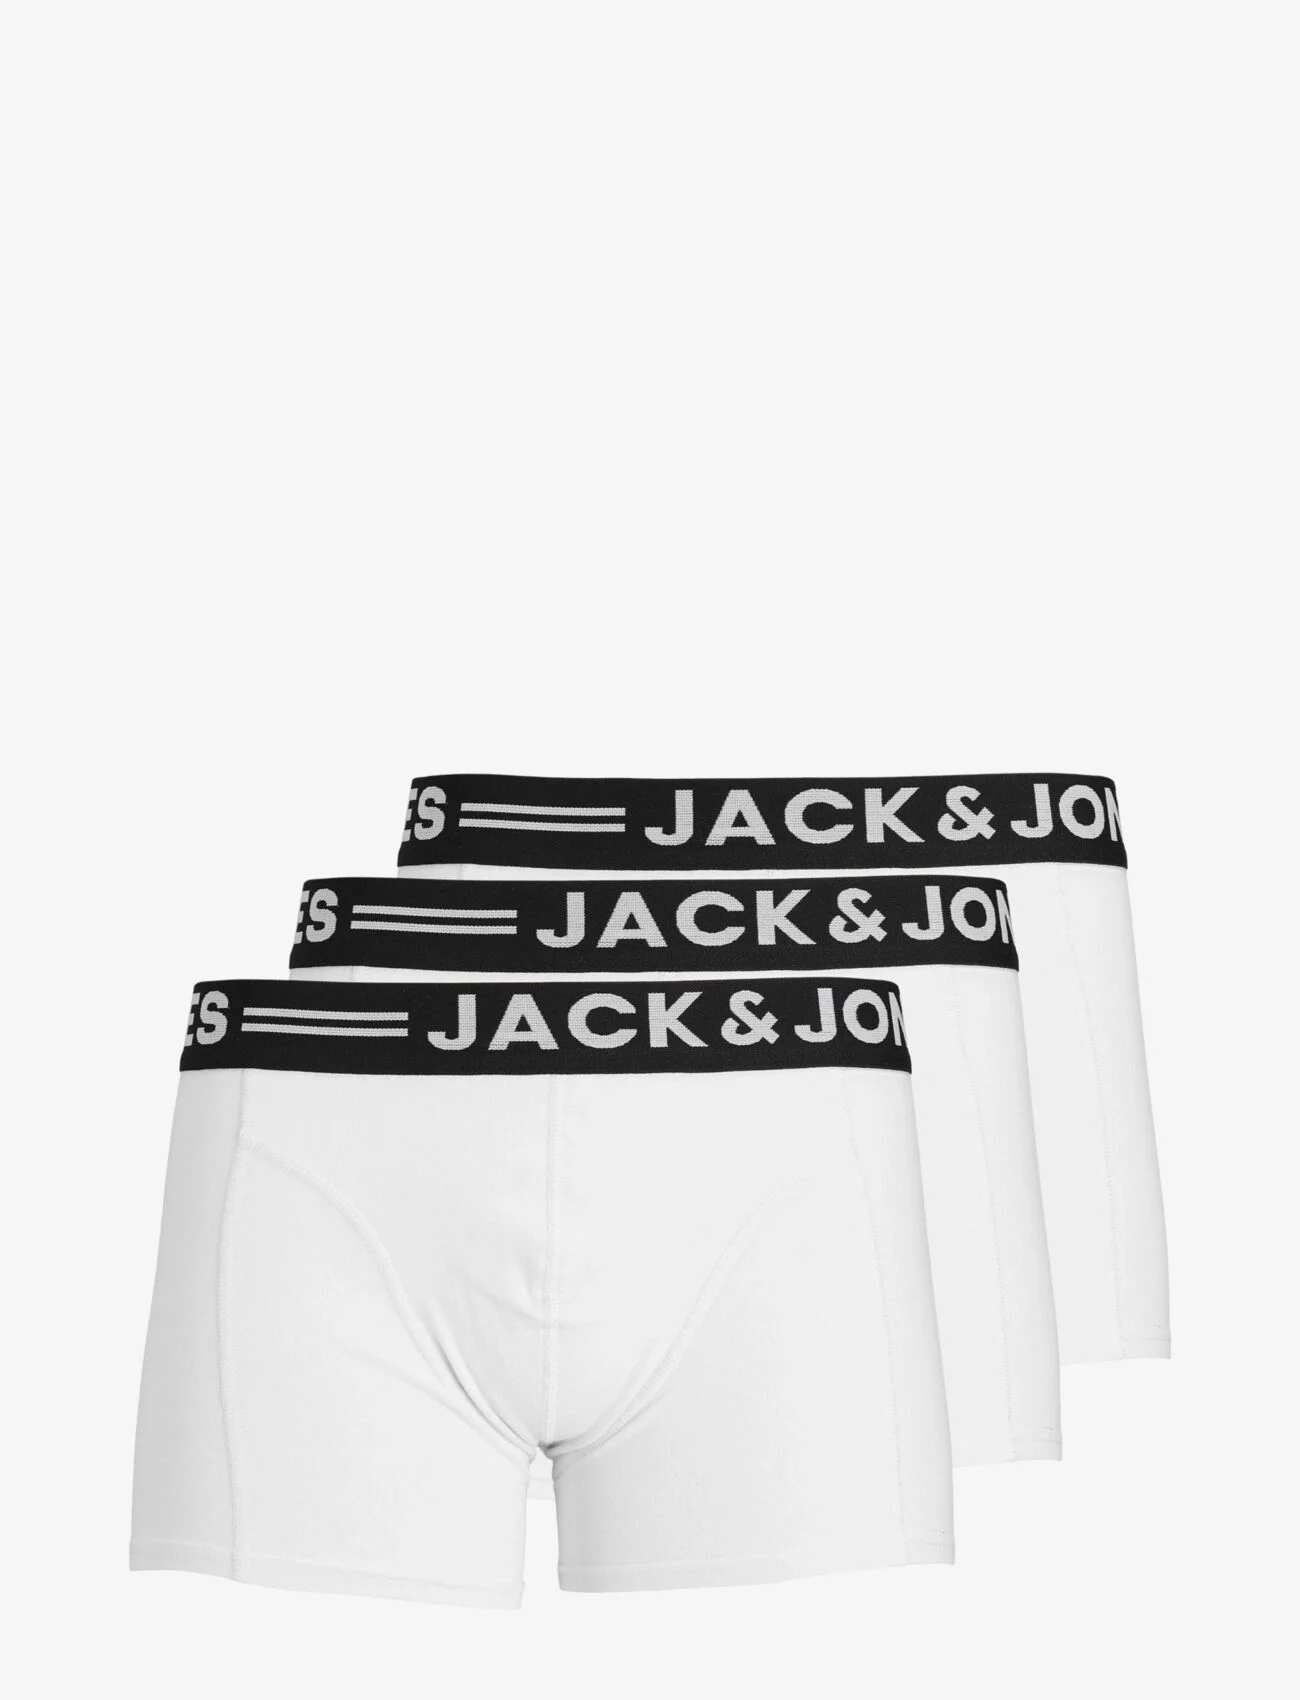 Jack & Jones - SENSE TRUNKS 3-PACK NOOS - lägsta priserna - white - 0